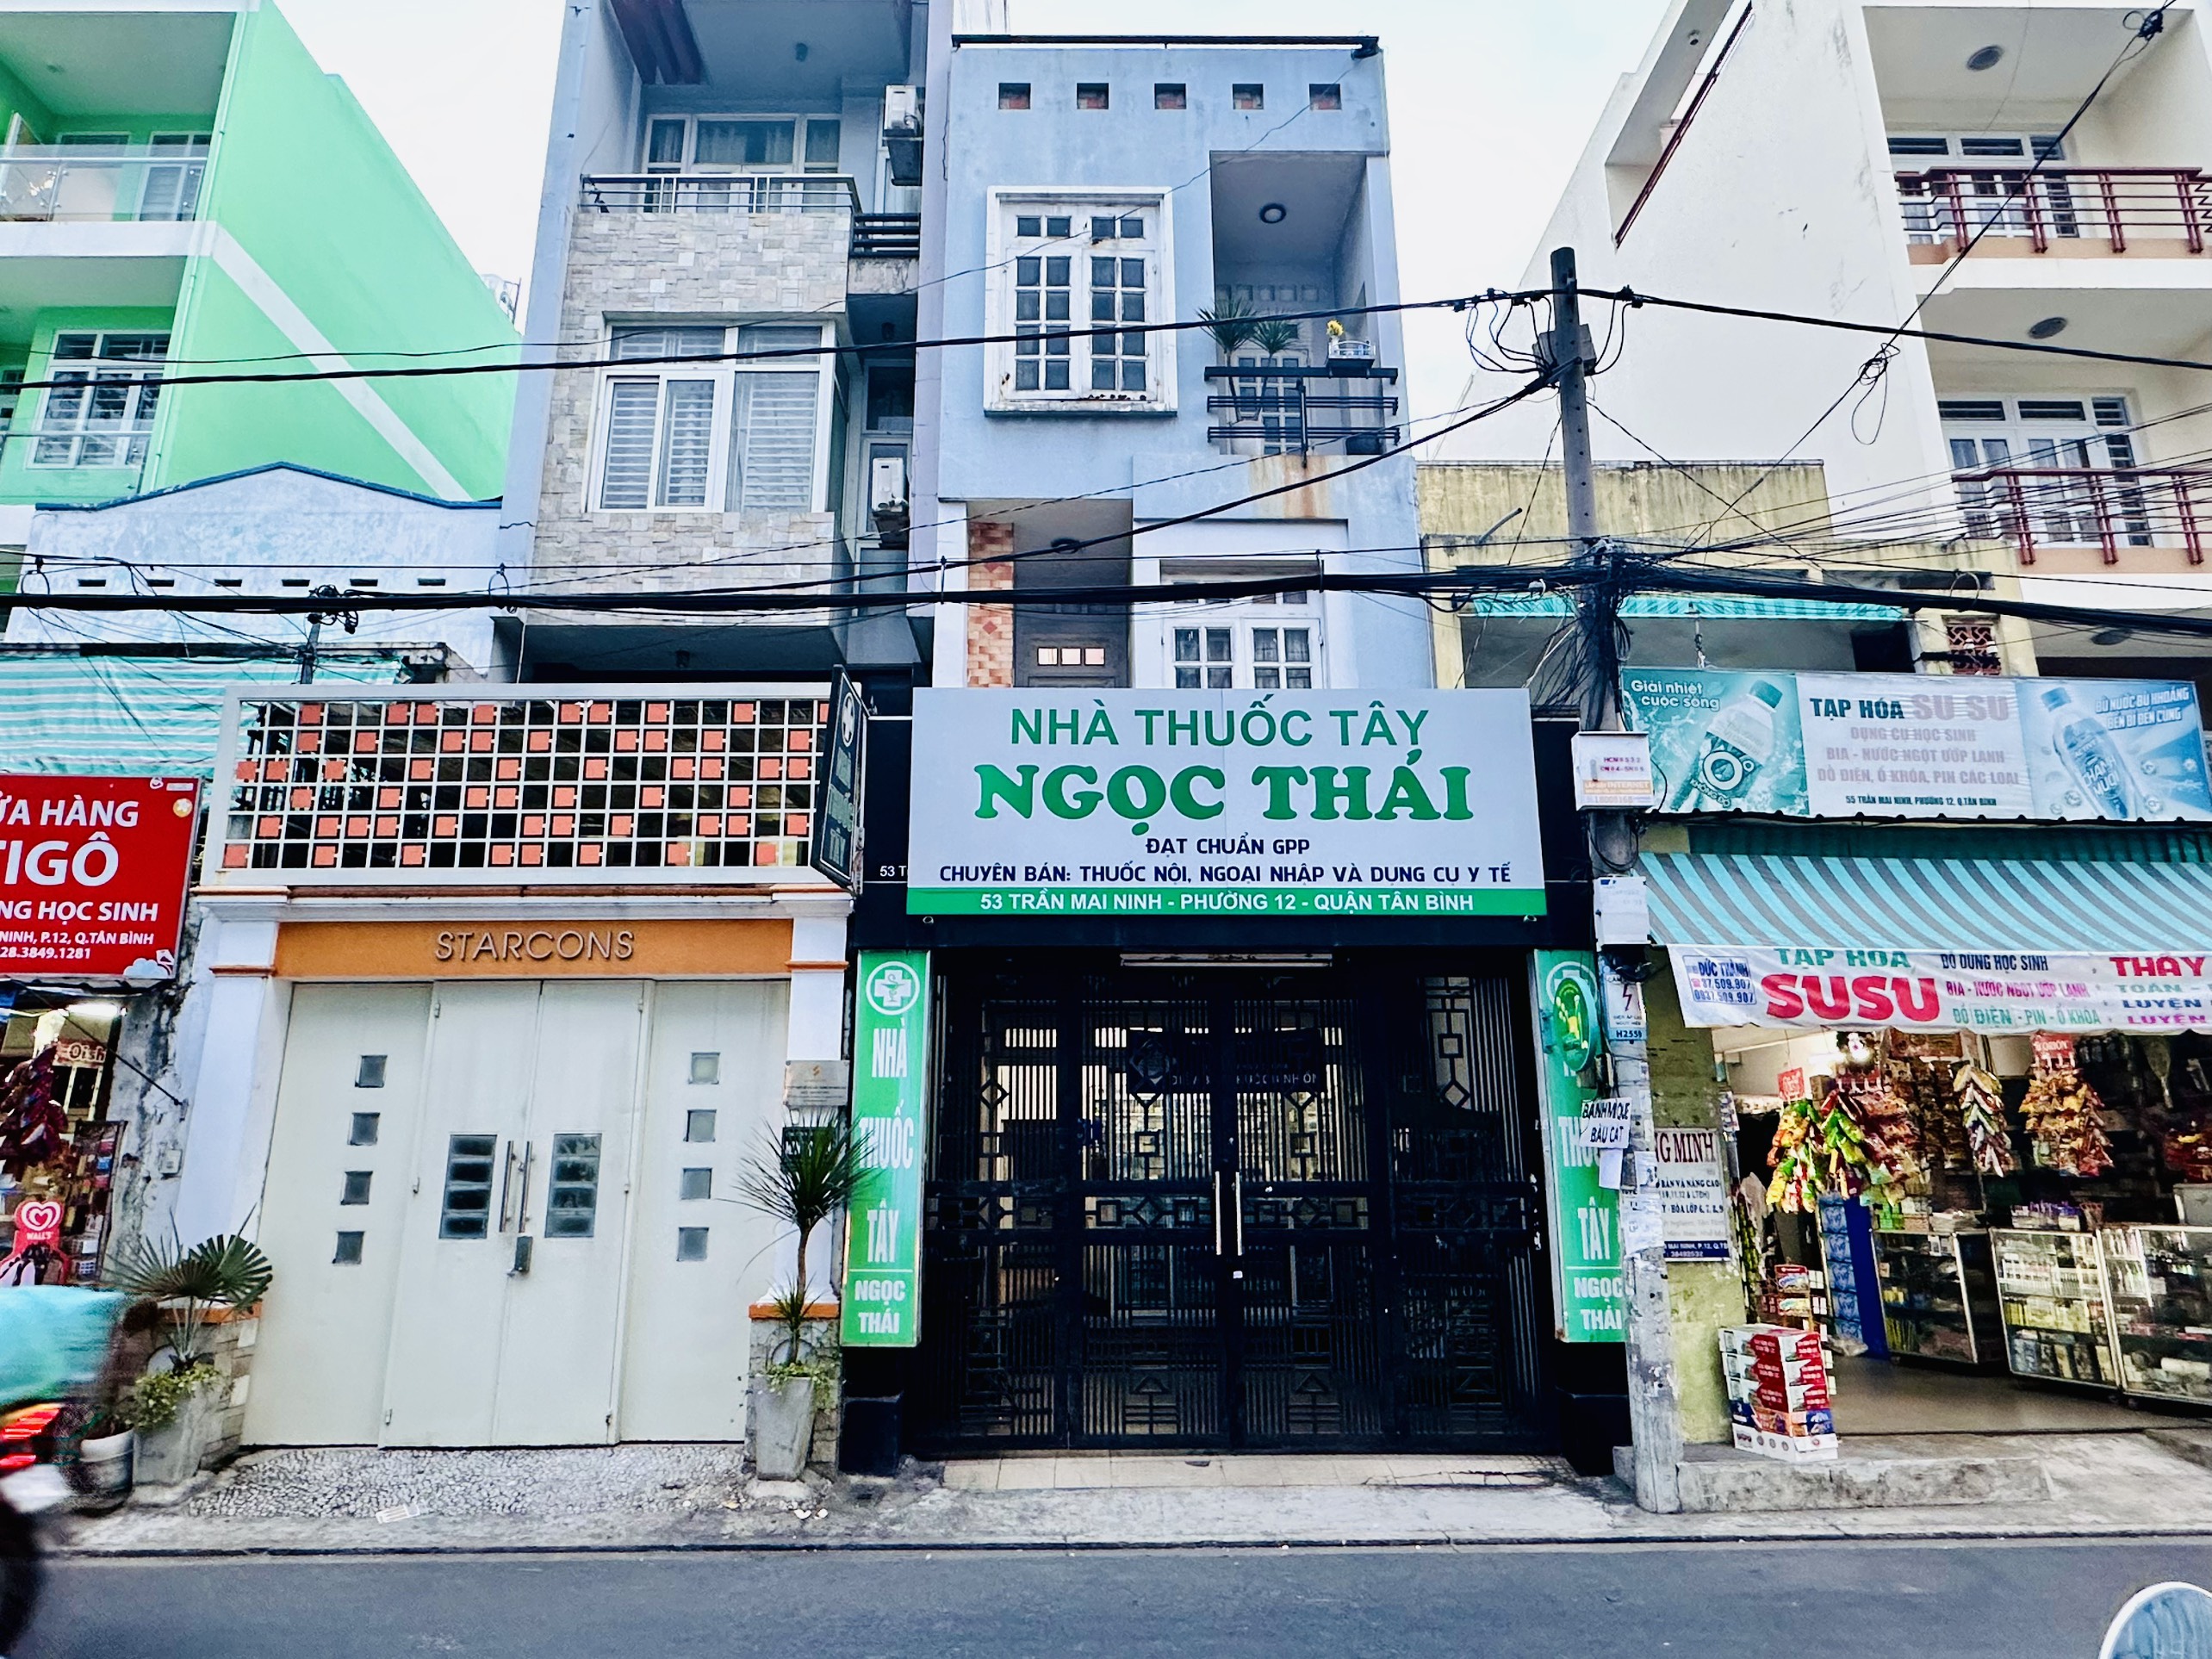 Chi cục THADS quận Tân Bình: Chuẩn bị cưỡng chế căn nhà 53 Trần Mai Ninh